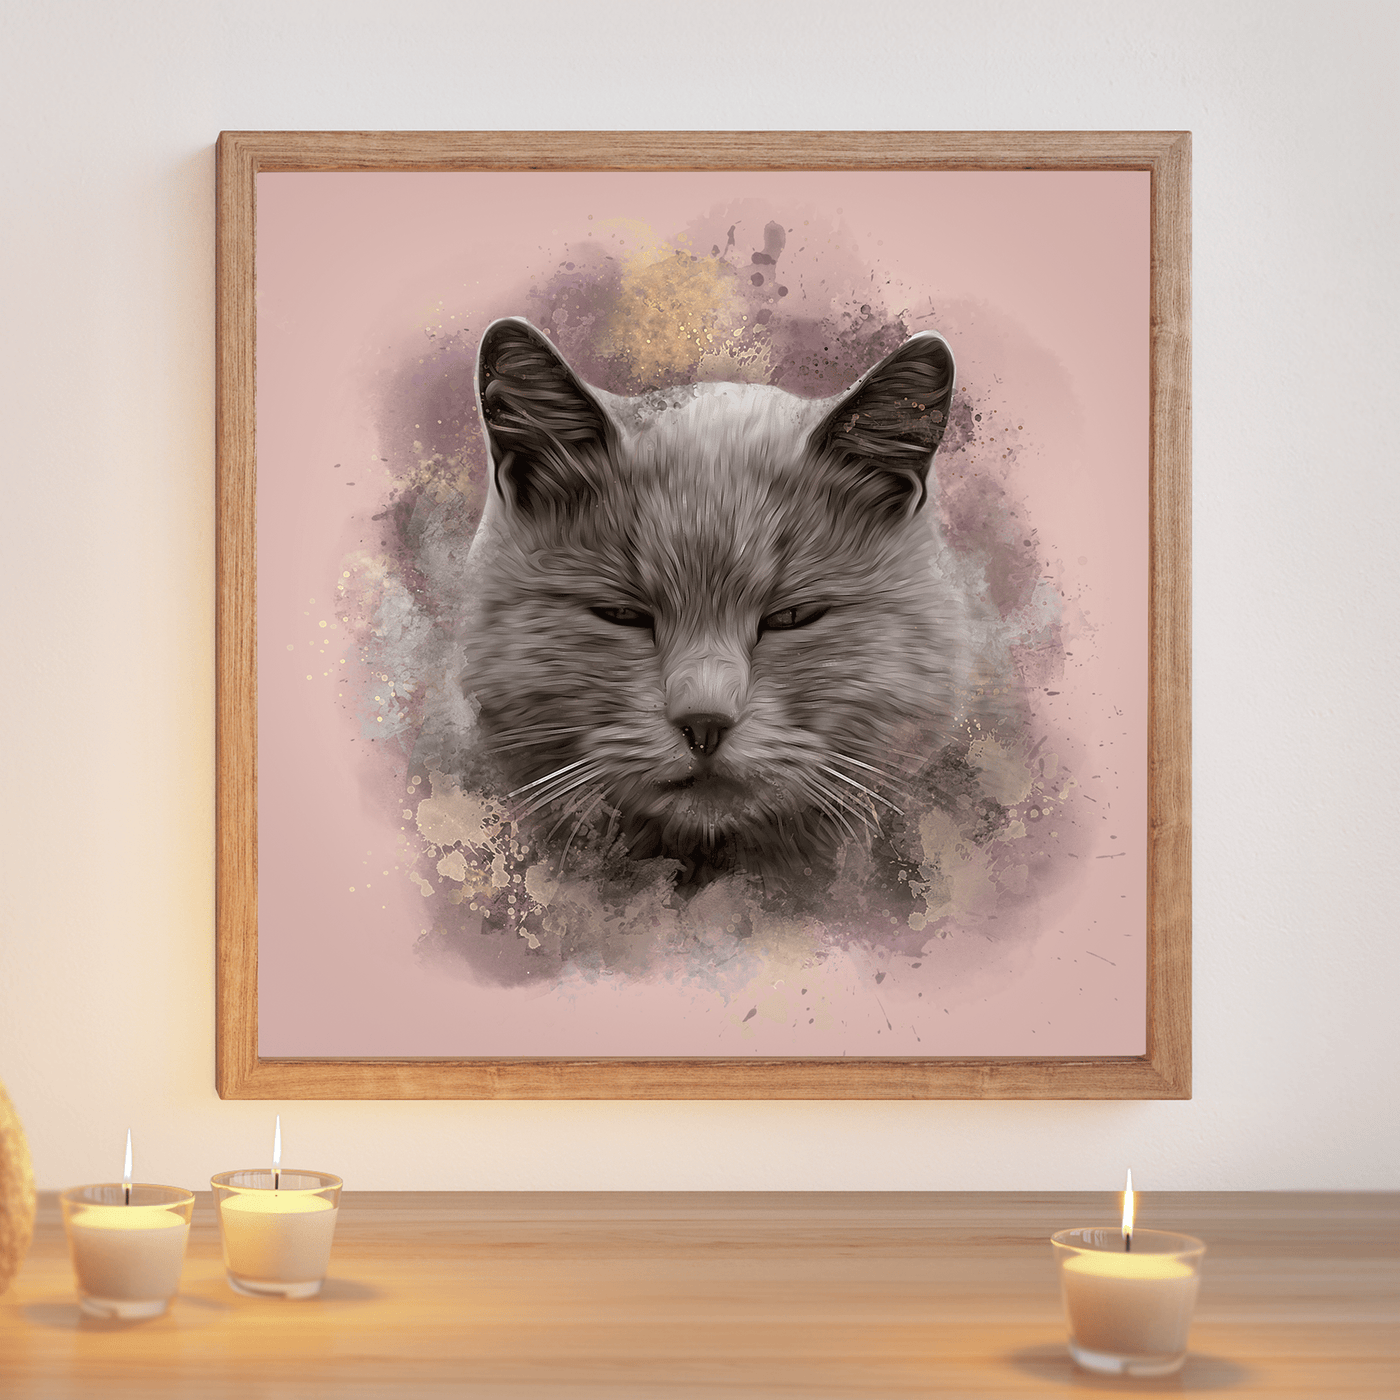 watercolor cat portrait of adorable fur cat